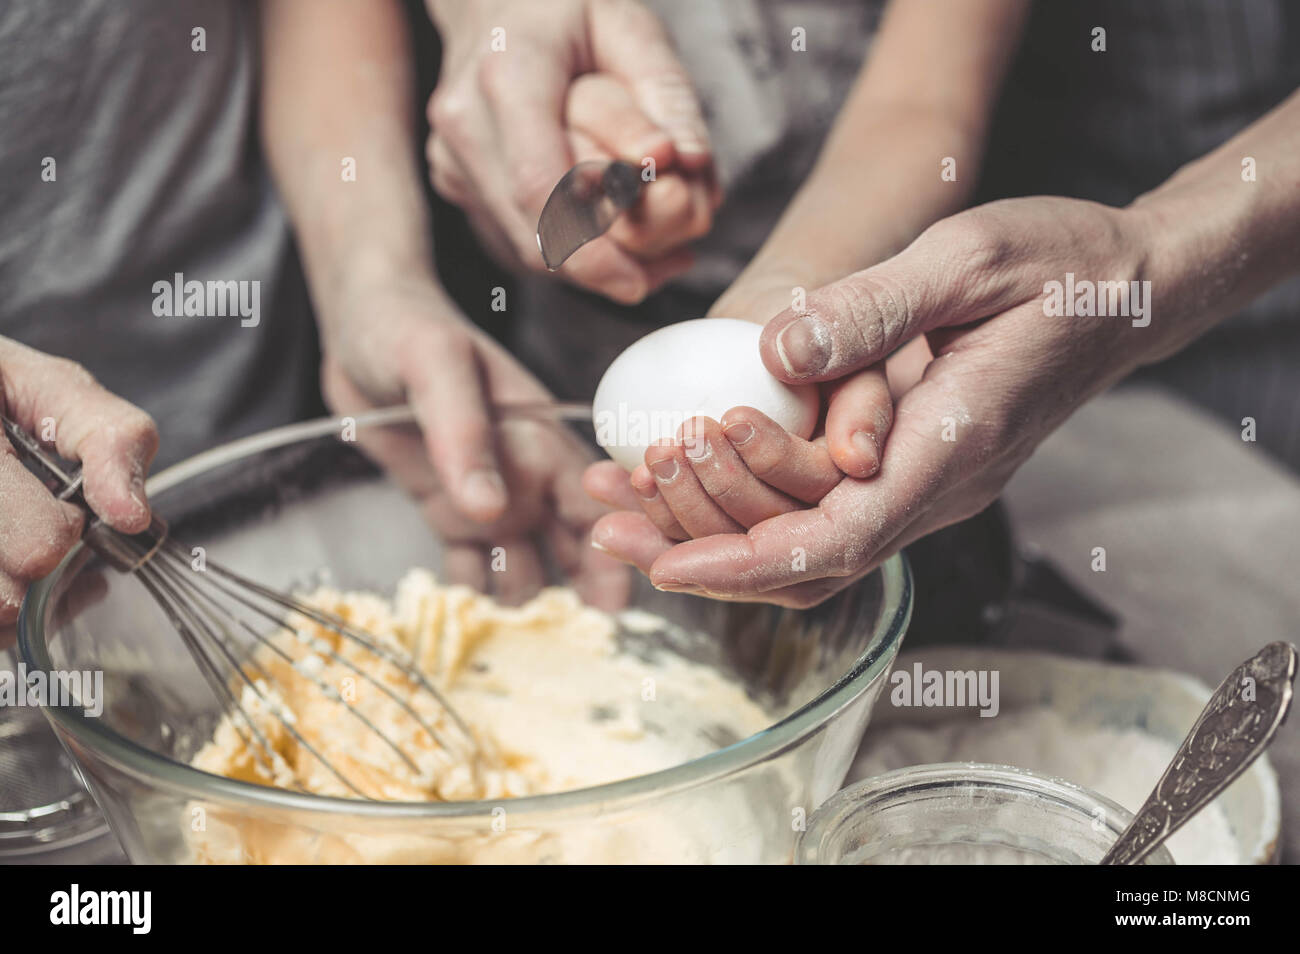 Le madri e i bambini con le mani in mano cuocere la pasta per biscotti fatti in casa. Abbiamo cuoco in cucina insieme con i bambini. Famiglia felice Foto Stock